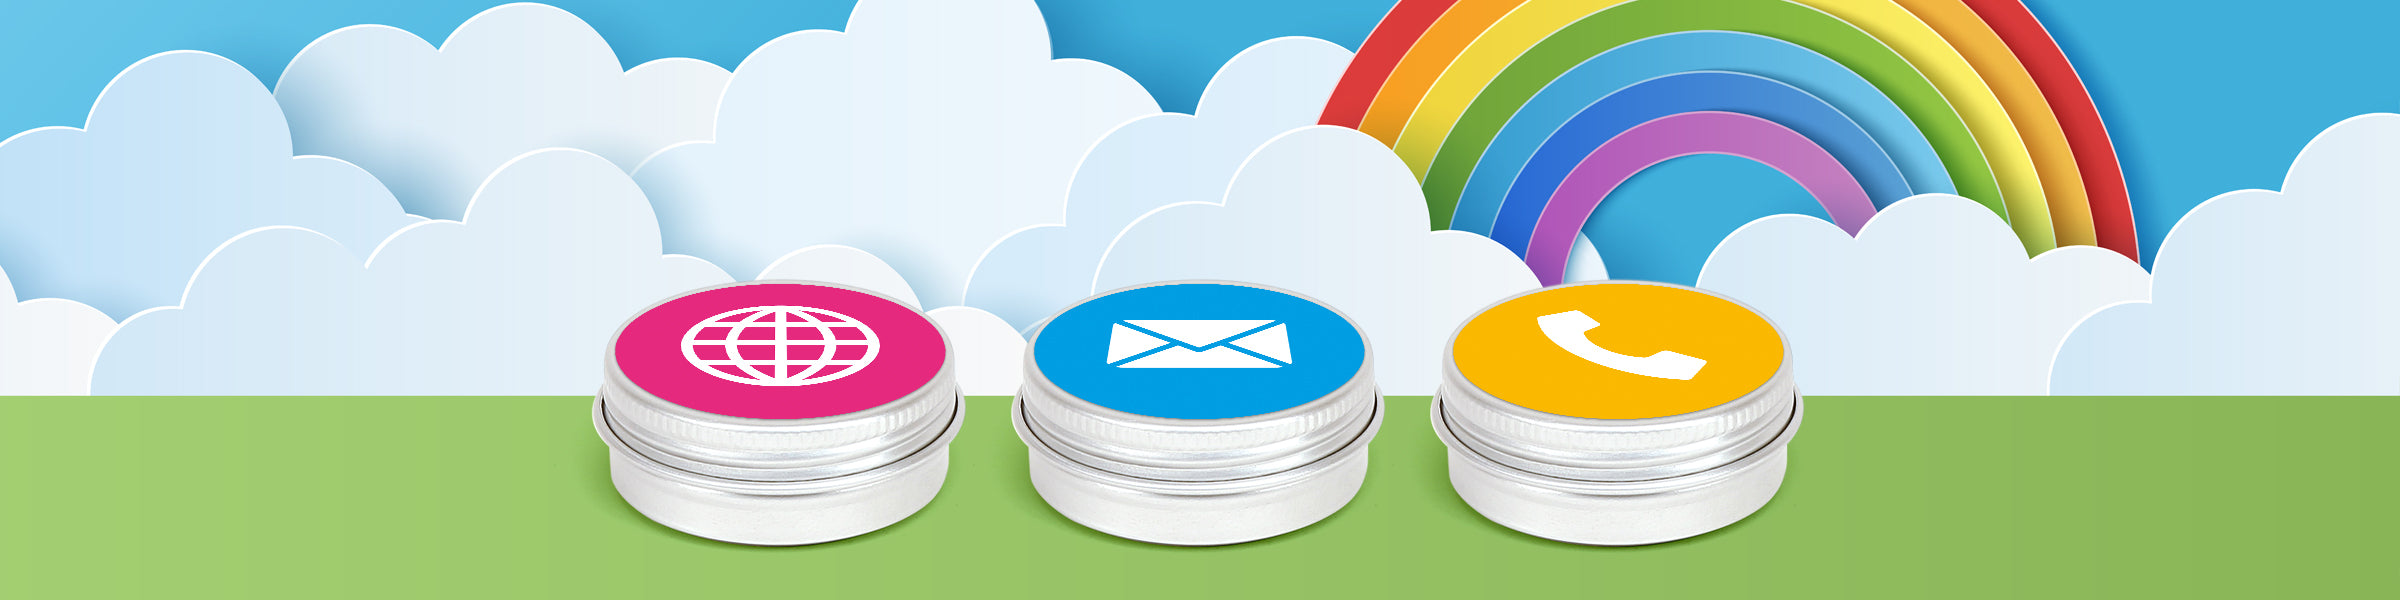 Trois boîtes en aluminium argentées avec couvercle à vis avec des étiquettes qui ont des icônes pour le site internet, le courrier électronique et le téléphone, assis sur un fond de nuages et d'un arc-en-ciel.